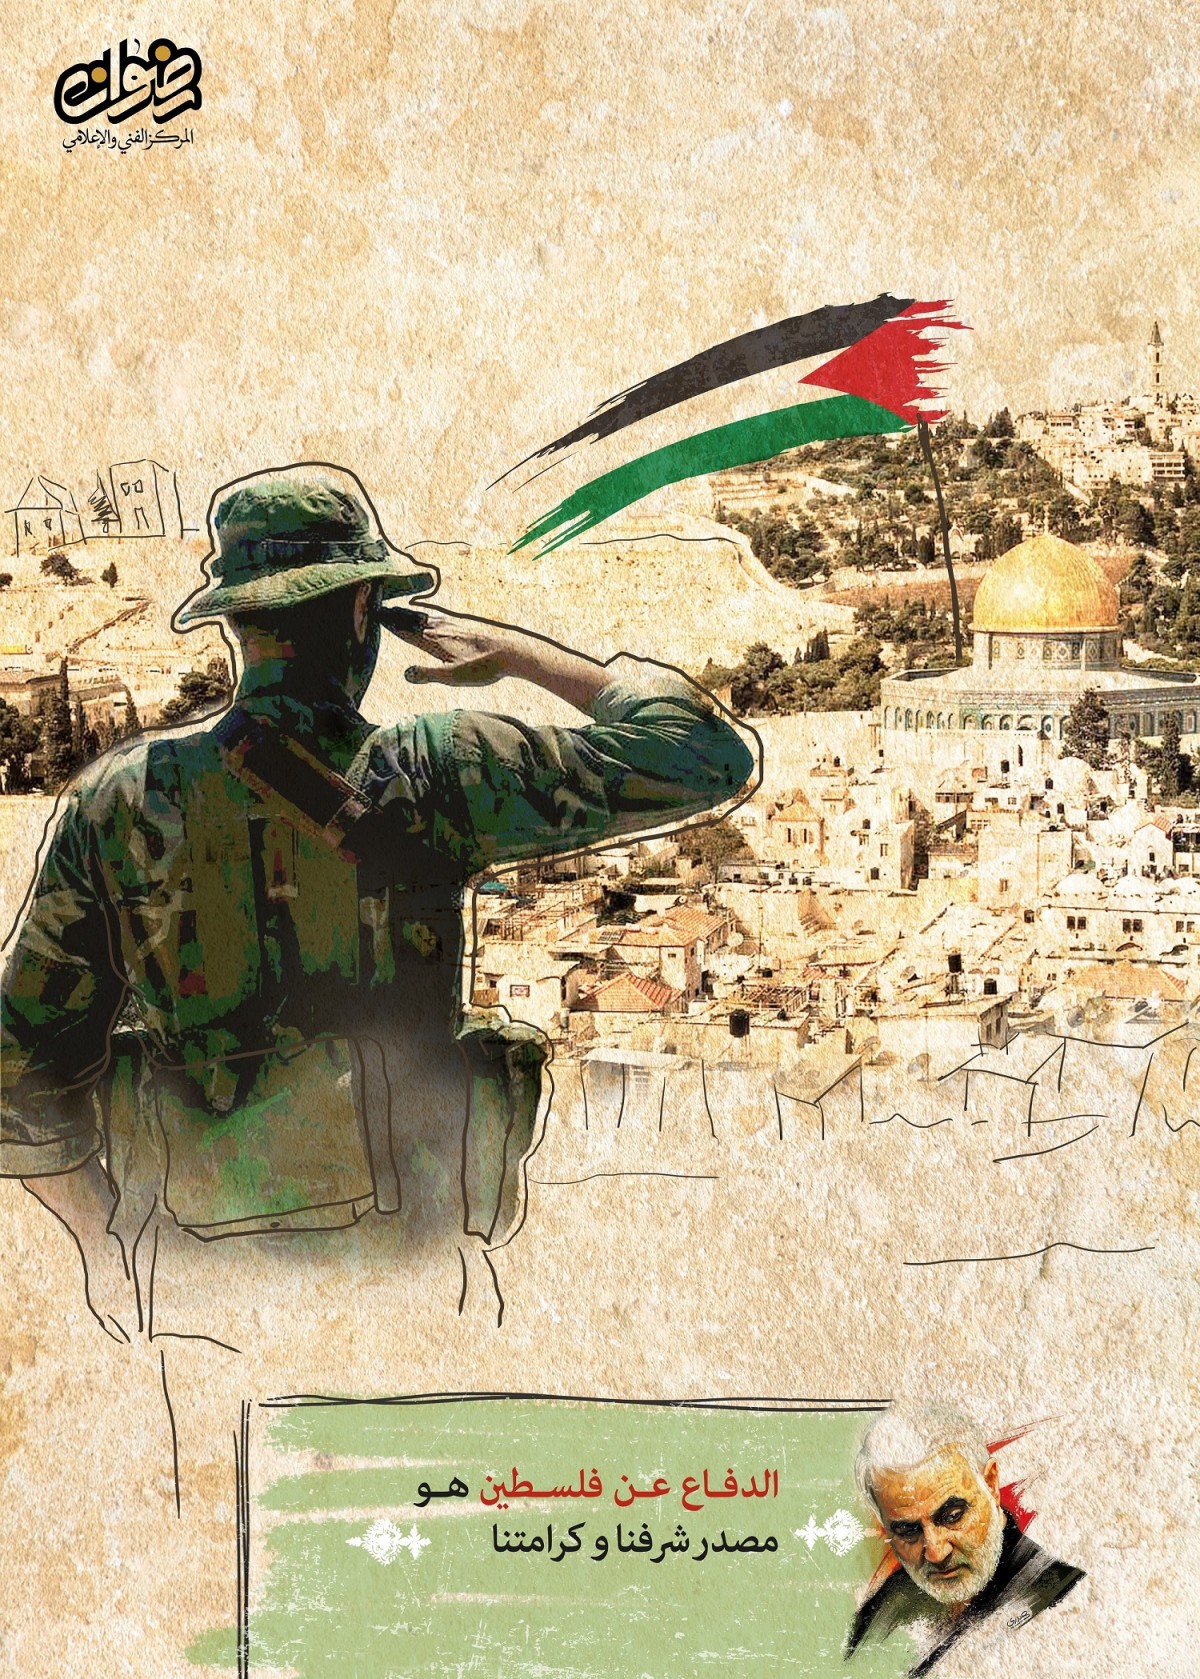 ? ” الدفاع عن الفلسطين هو مصدر شرفنا و كرامتنا “